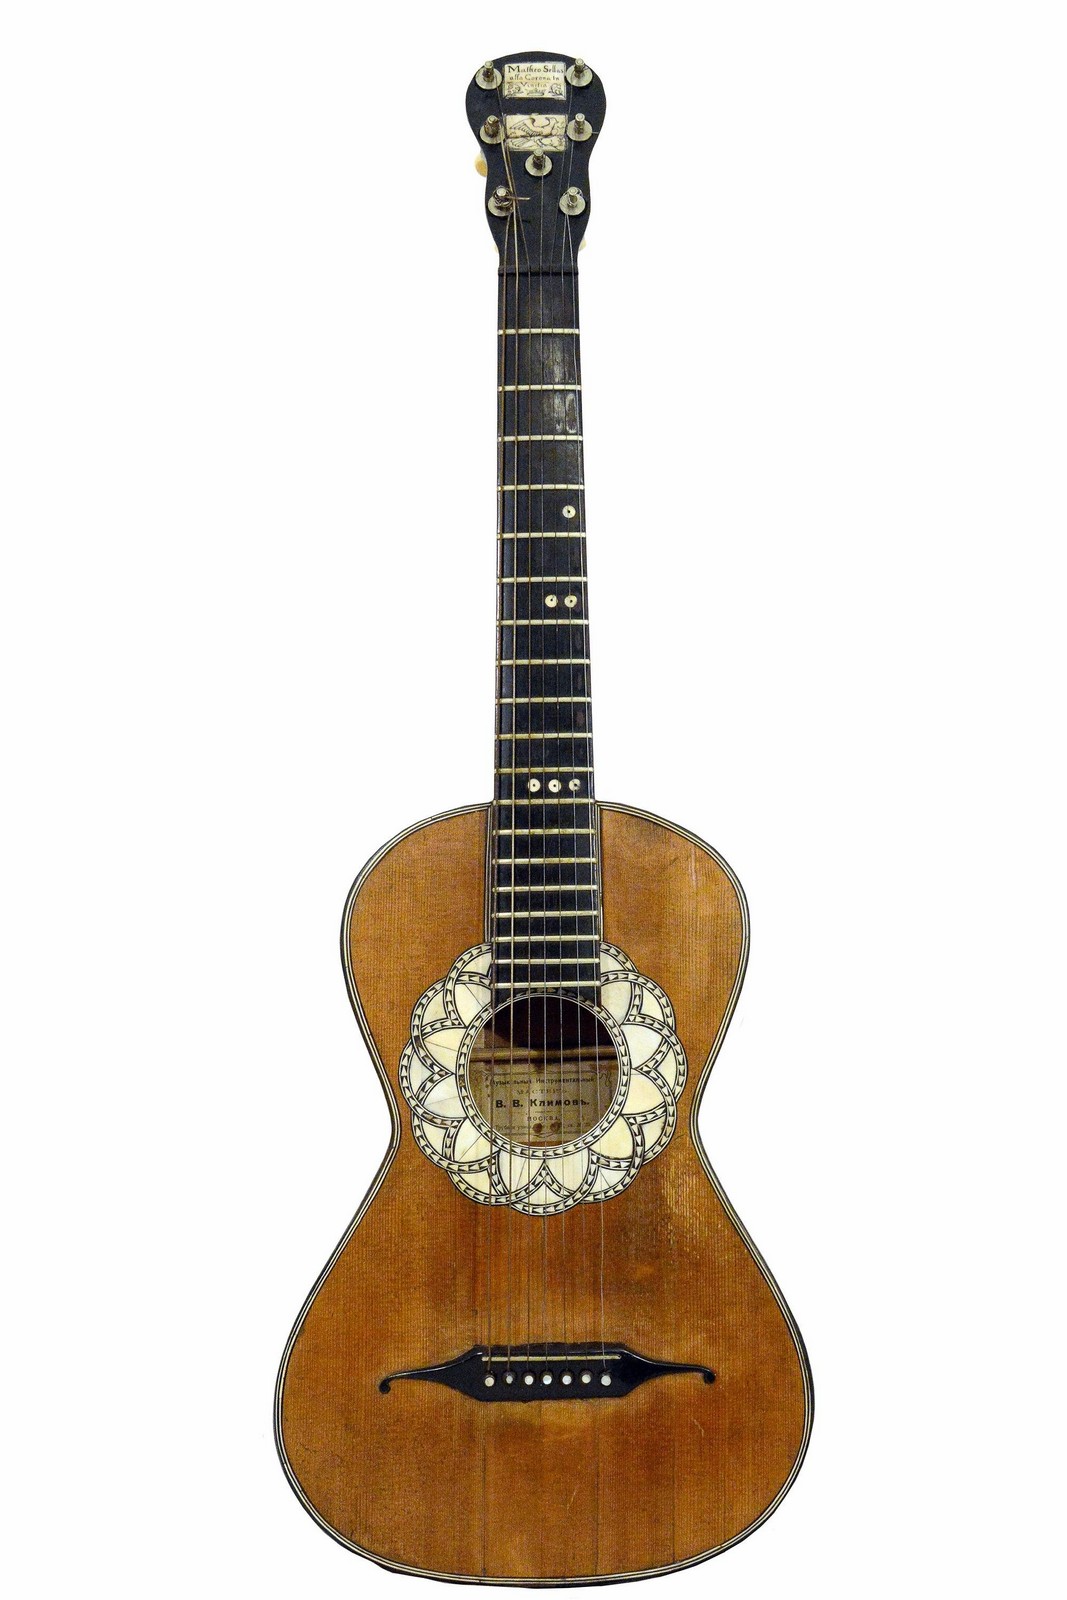 Гитара, принадлежавшая Леониду Утесову